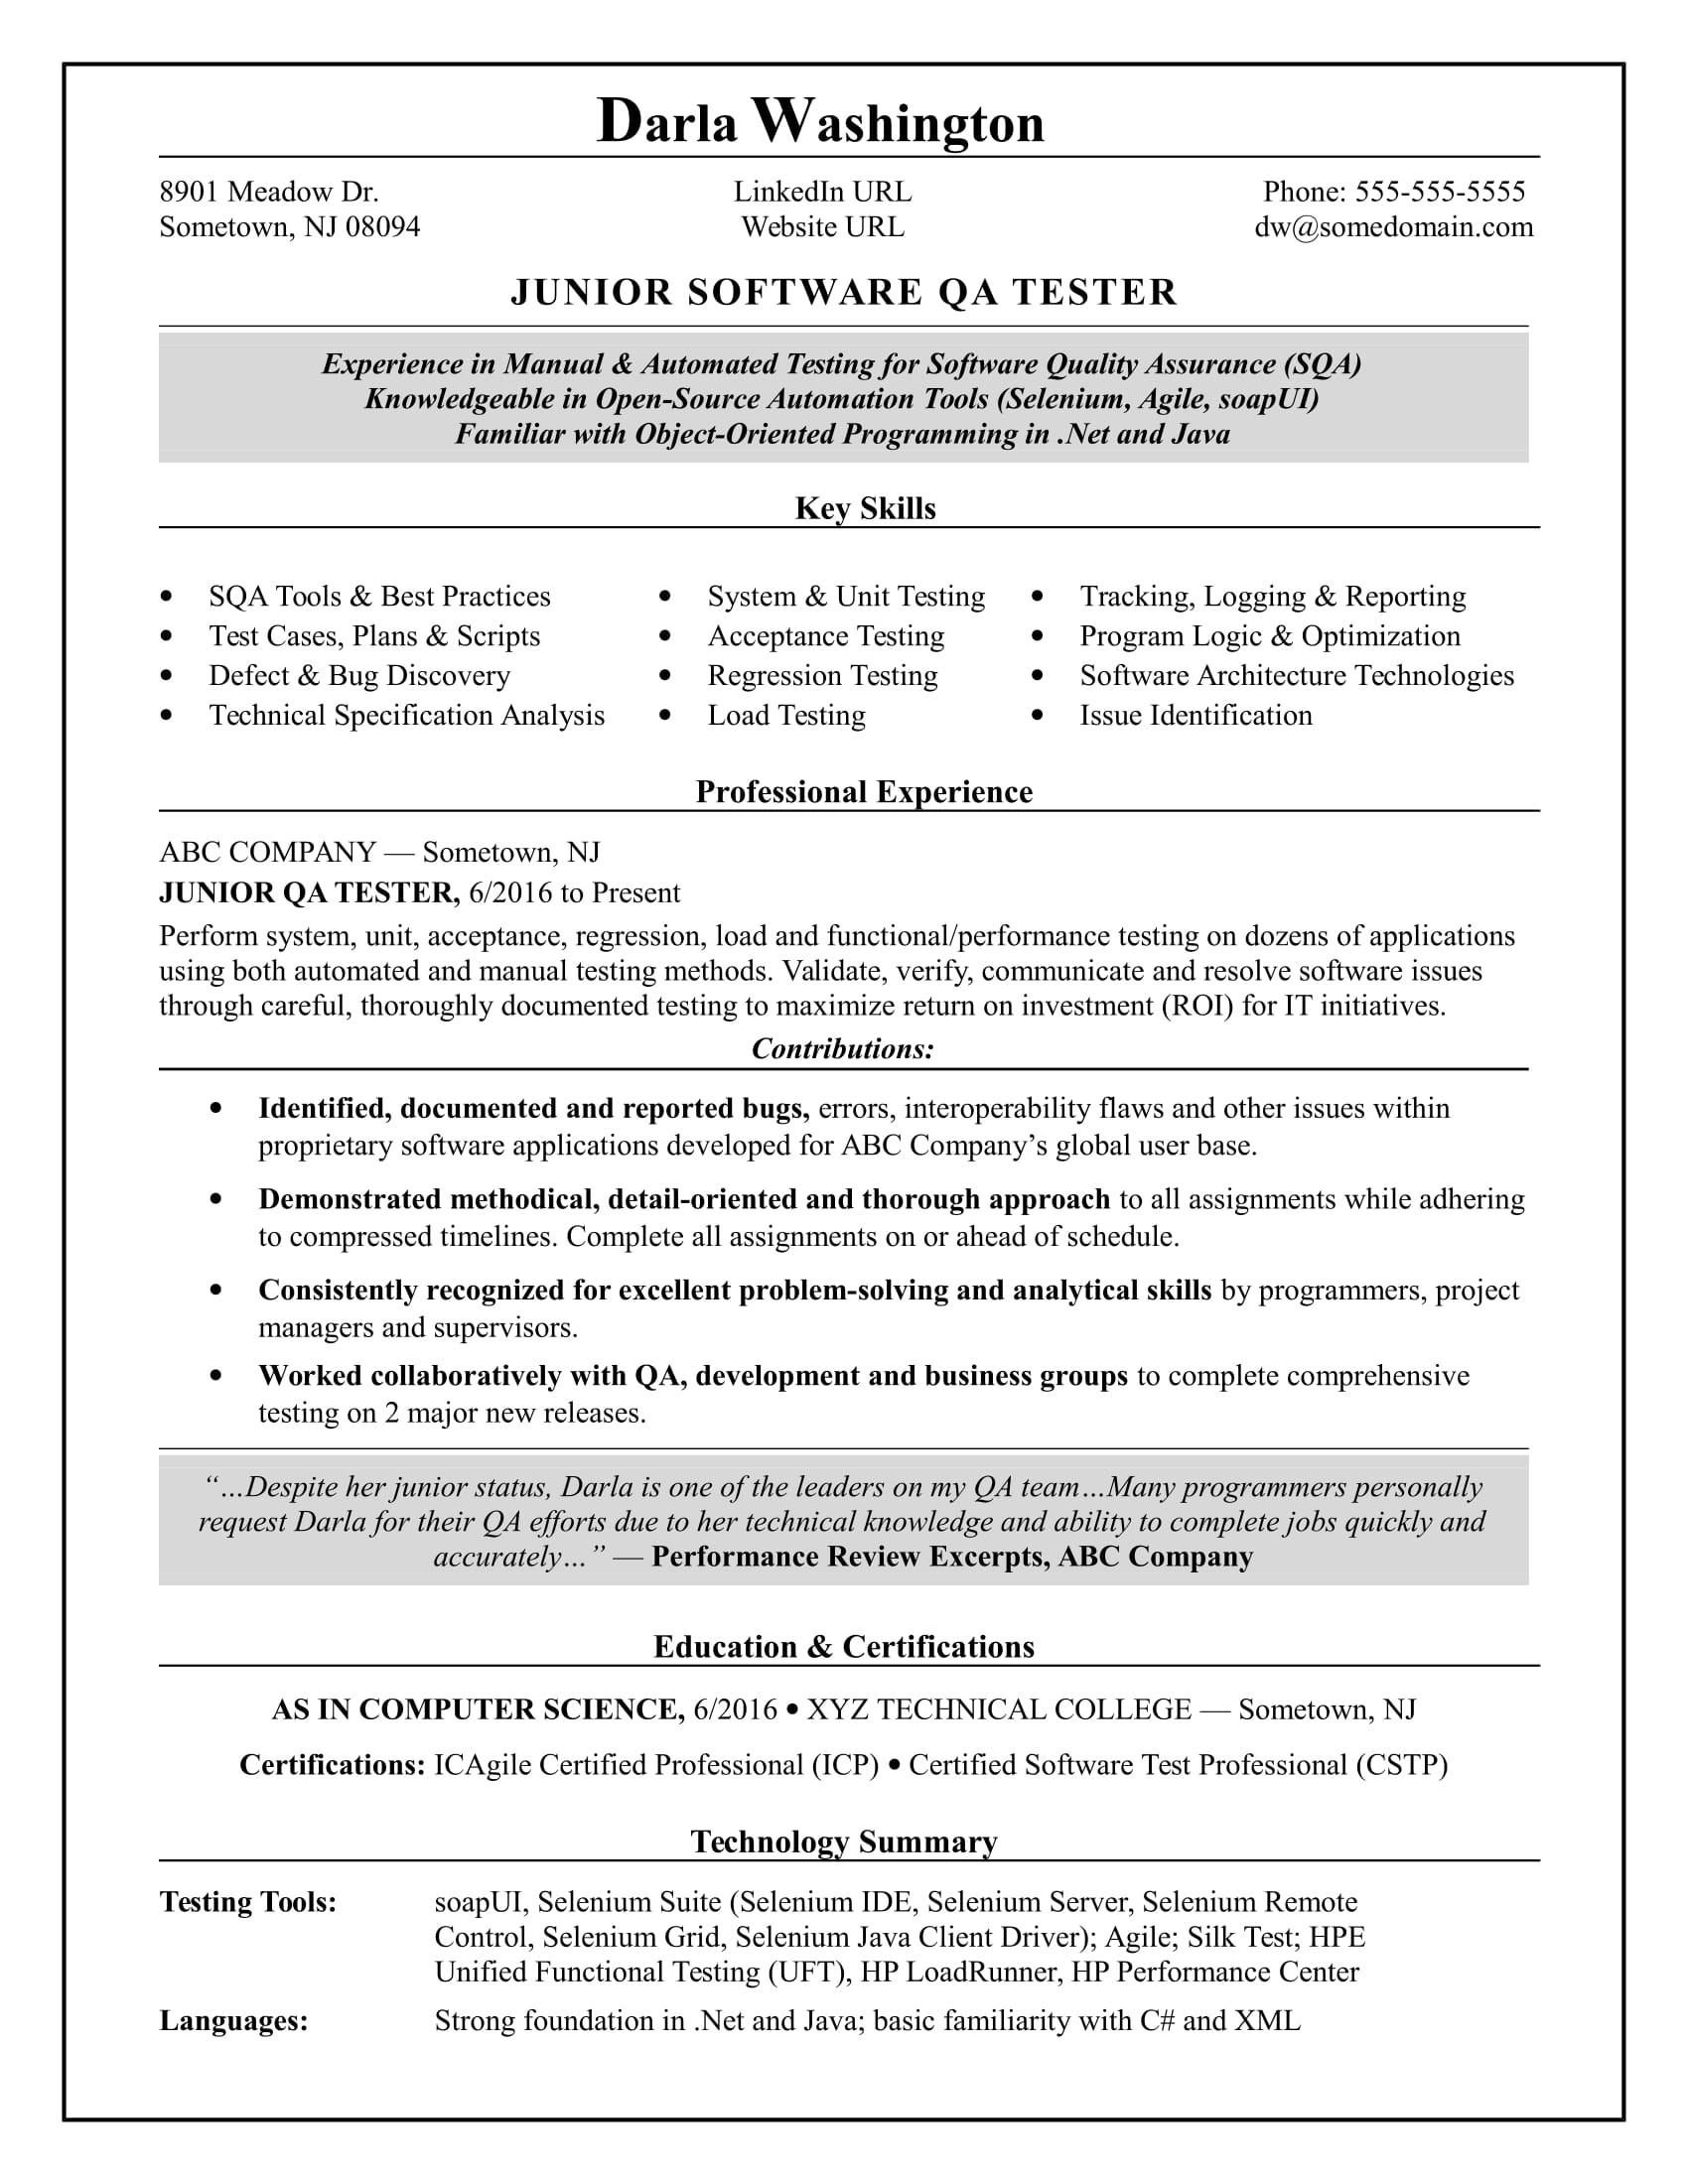 Sample Resume for Selenium Automation Testing Fresher Entry-level software Tester Resume Monster.com